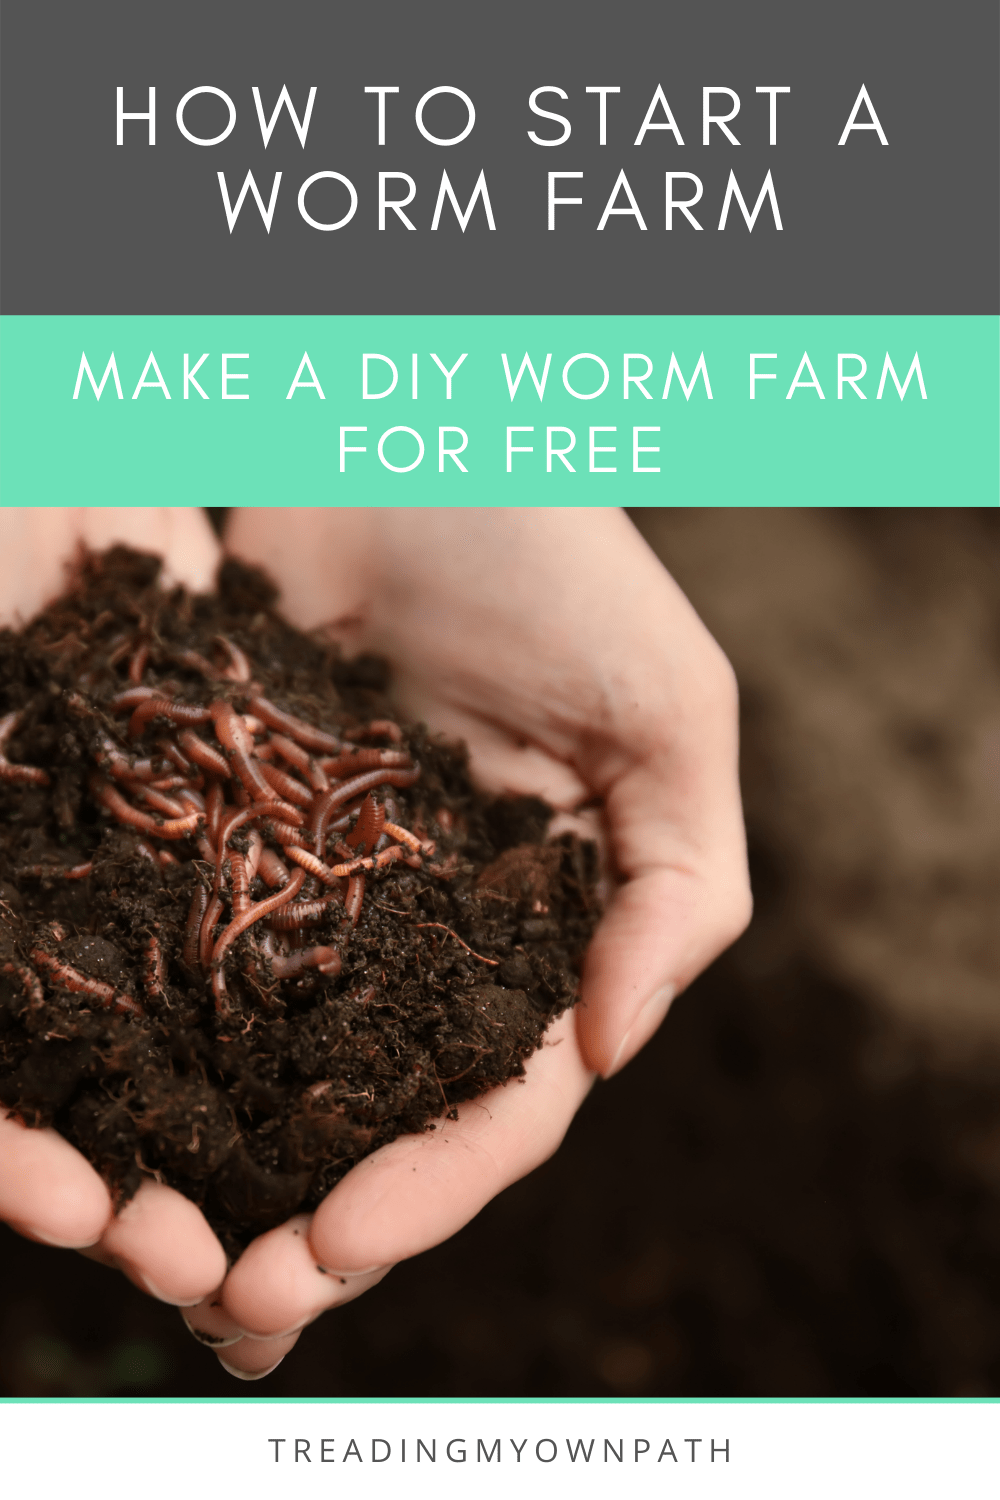 How to Build a DIY Worm Farm